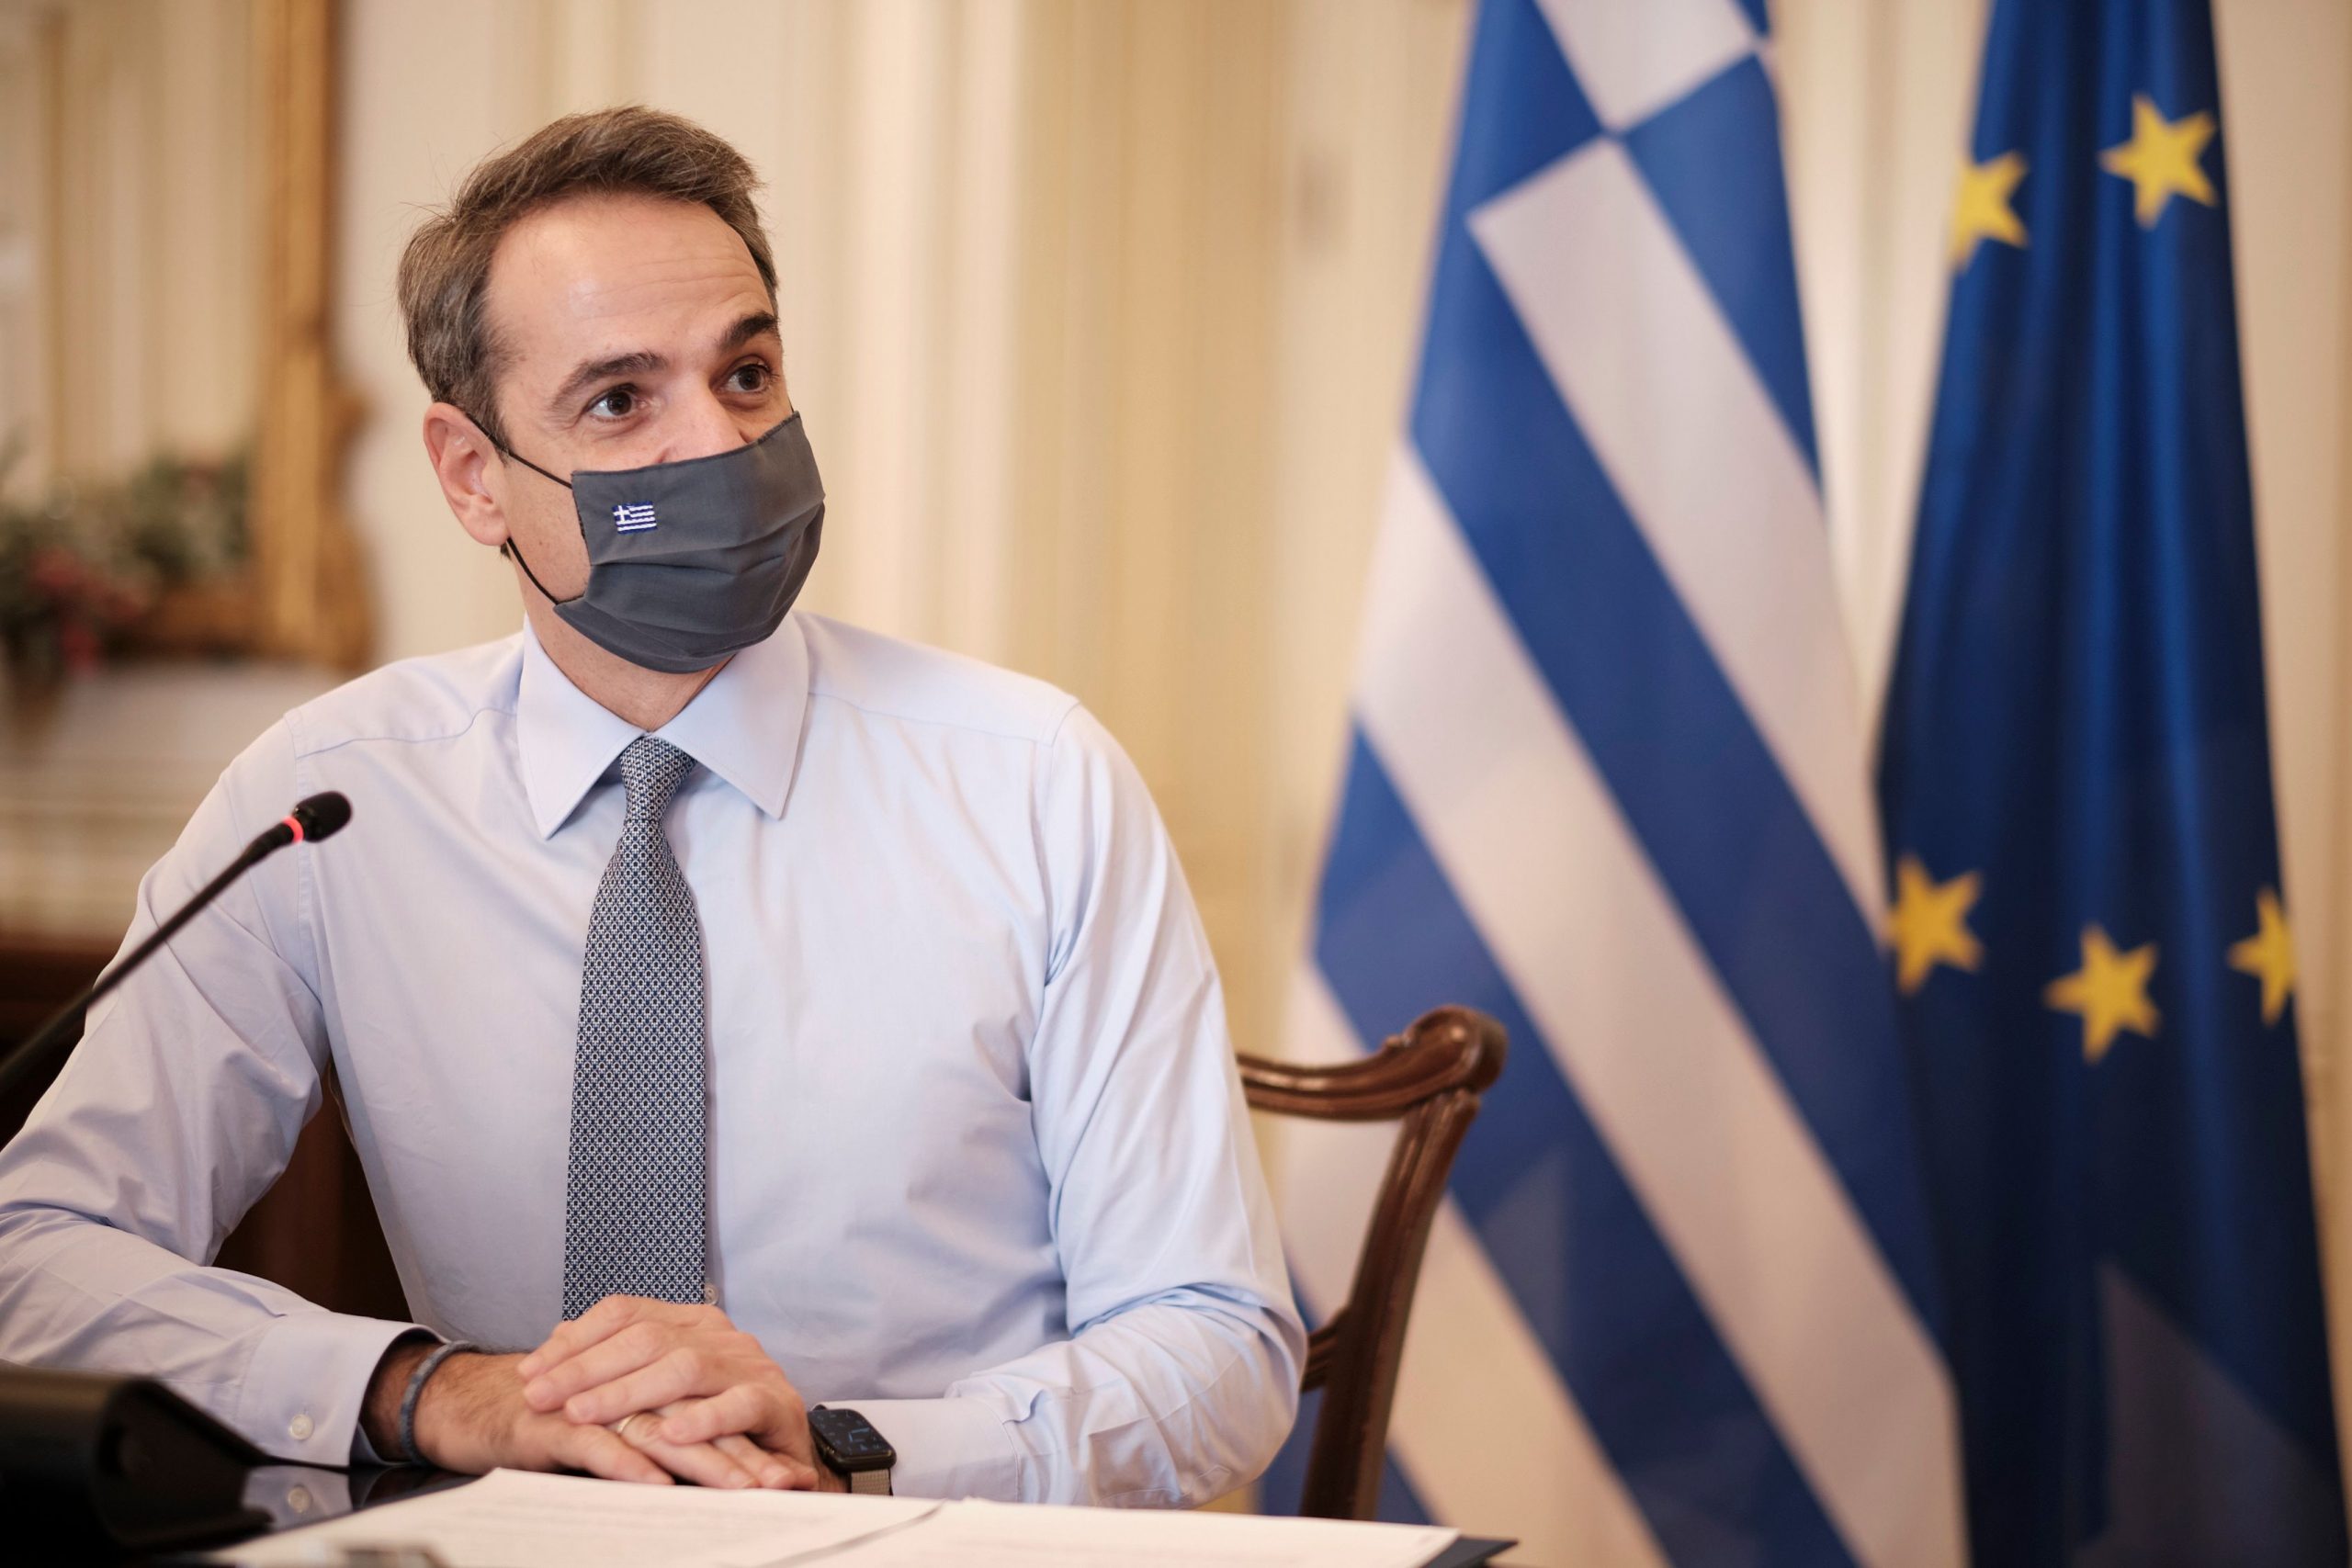 Κυρ. Μητσοτάκης: Χθες η Ελλάδα έσπασε το φράγμα των 5.000.000 εμβολιασμών-Συνεχίζουμε με γρήγορους ρυθμούς προς το στόχο μας: την Ελευθερία!